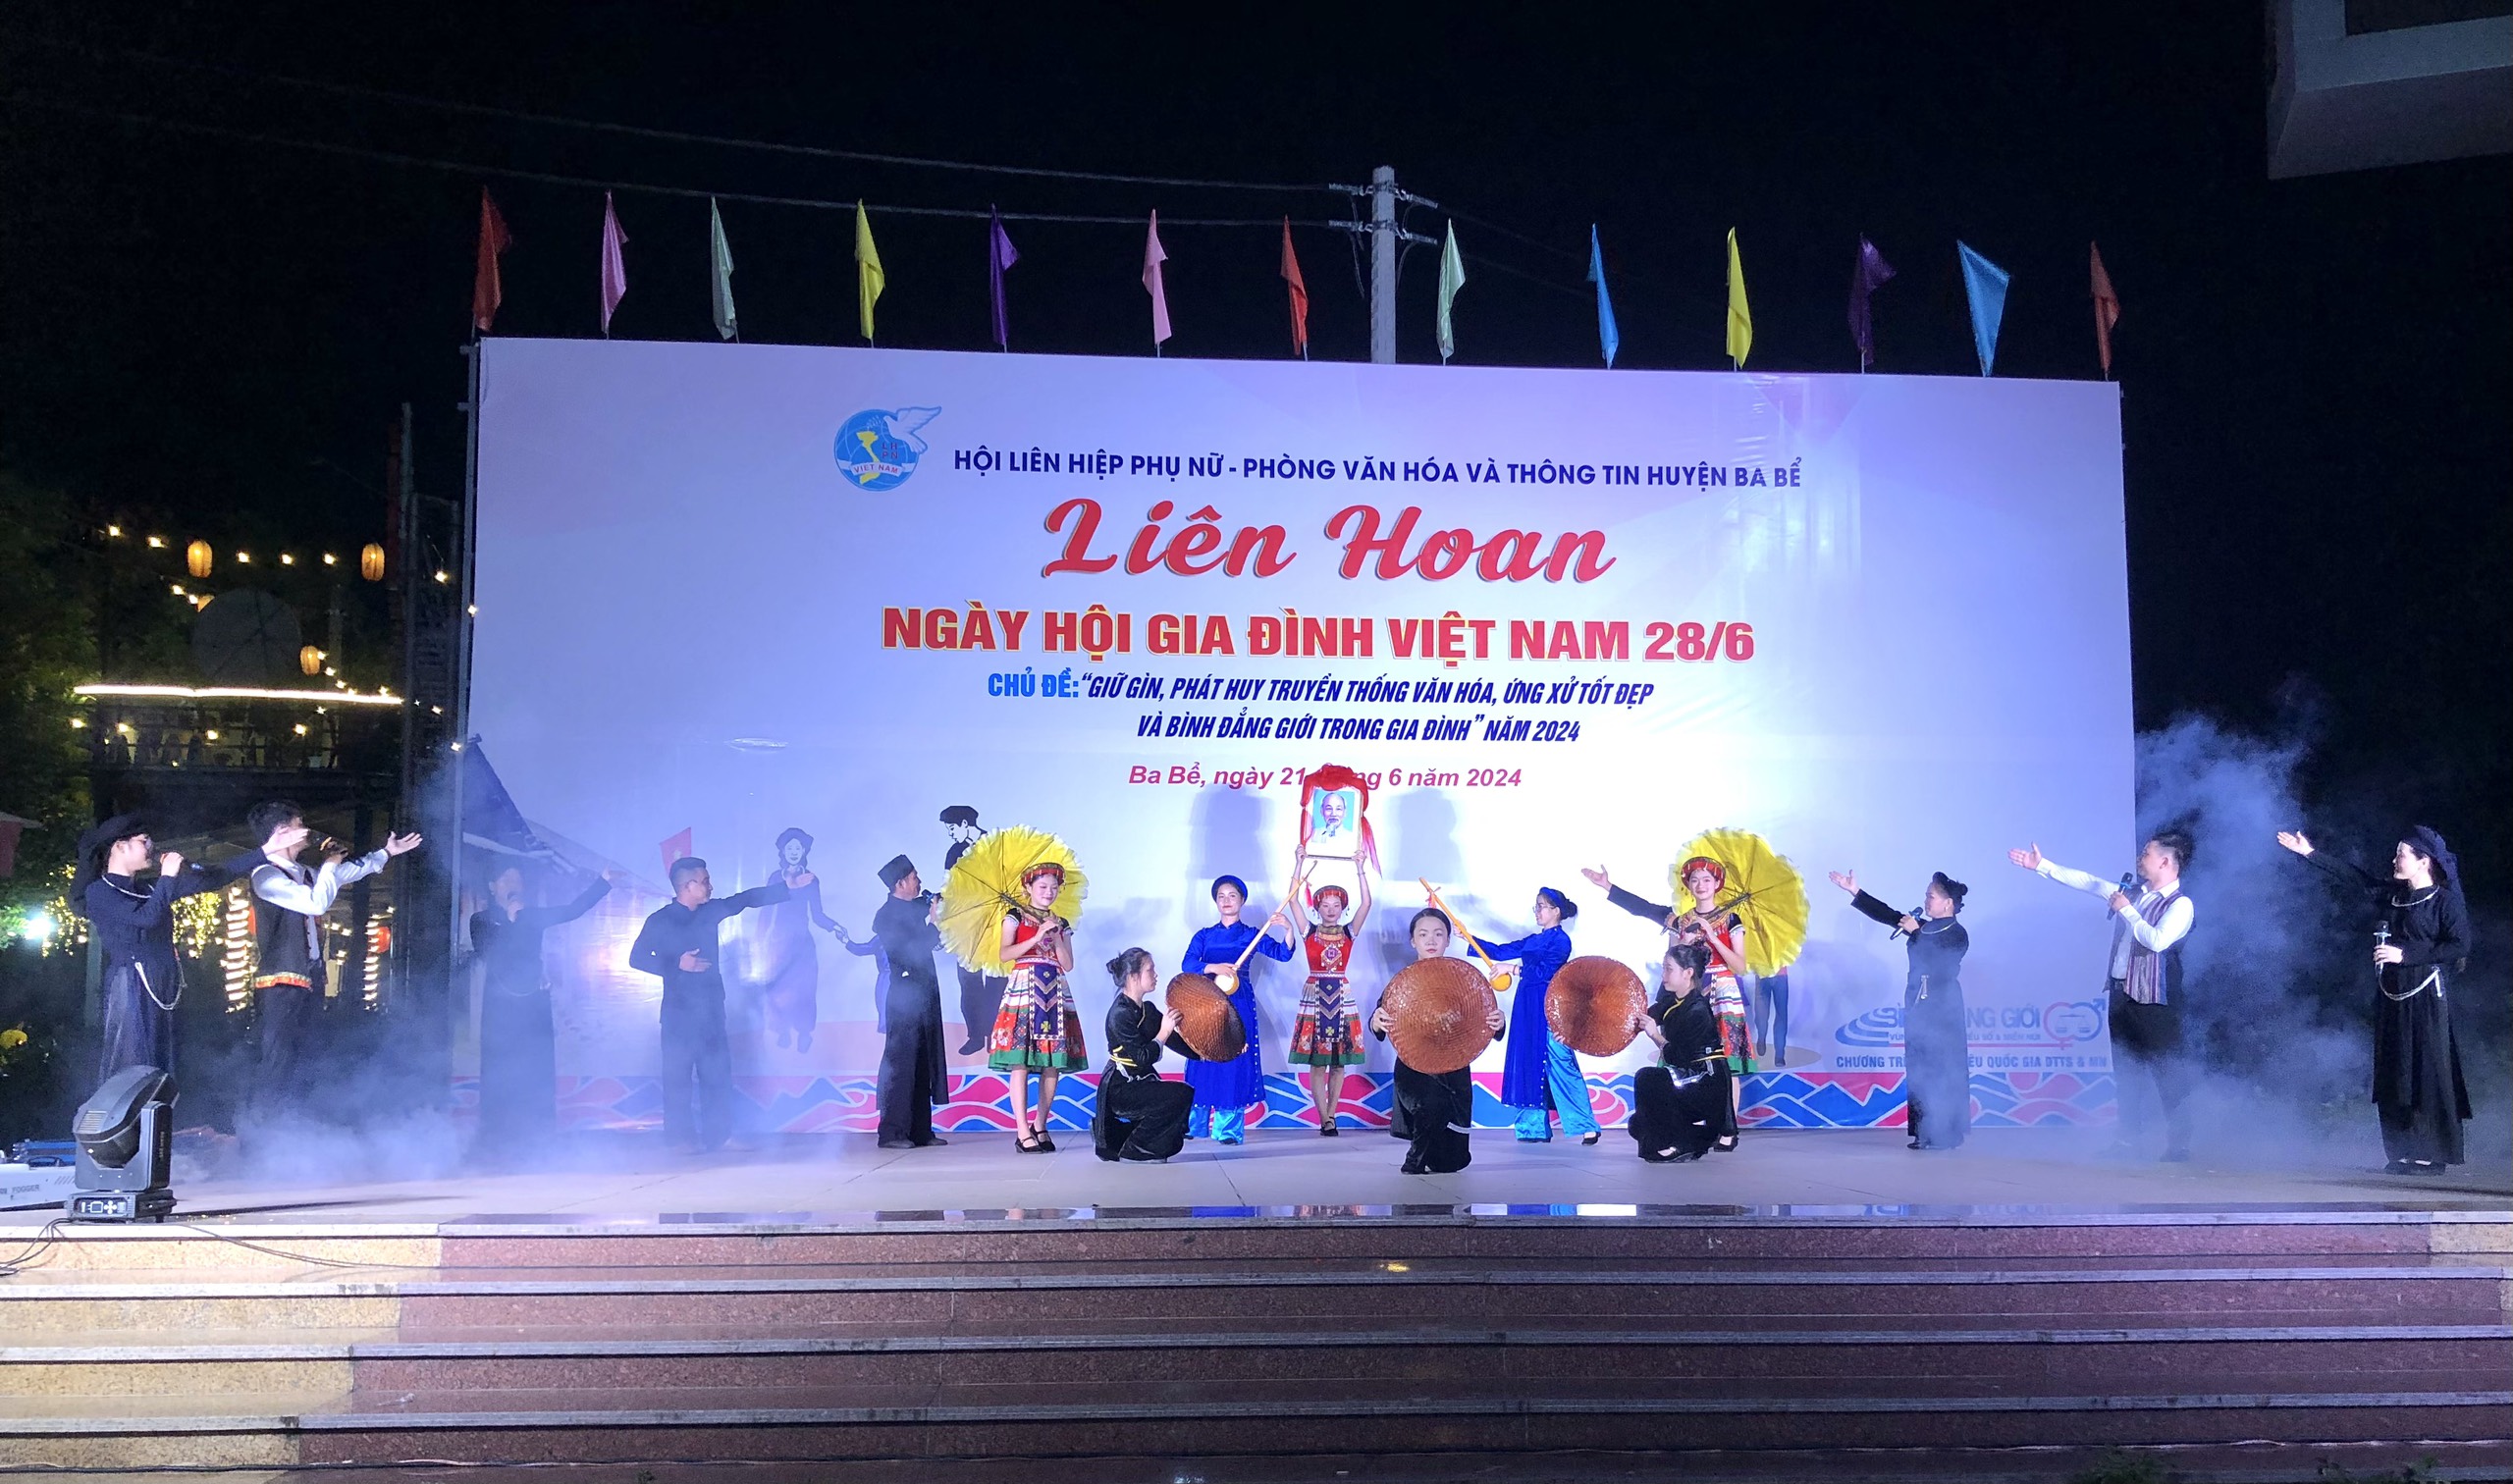 Ba Bể tổ chức Liên hoan ngày hội gia đình Việt Nam